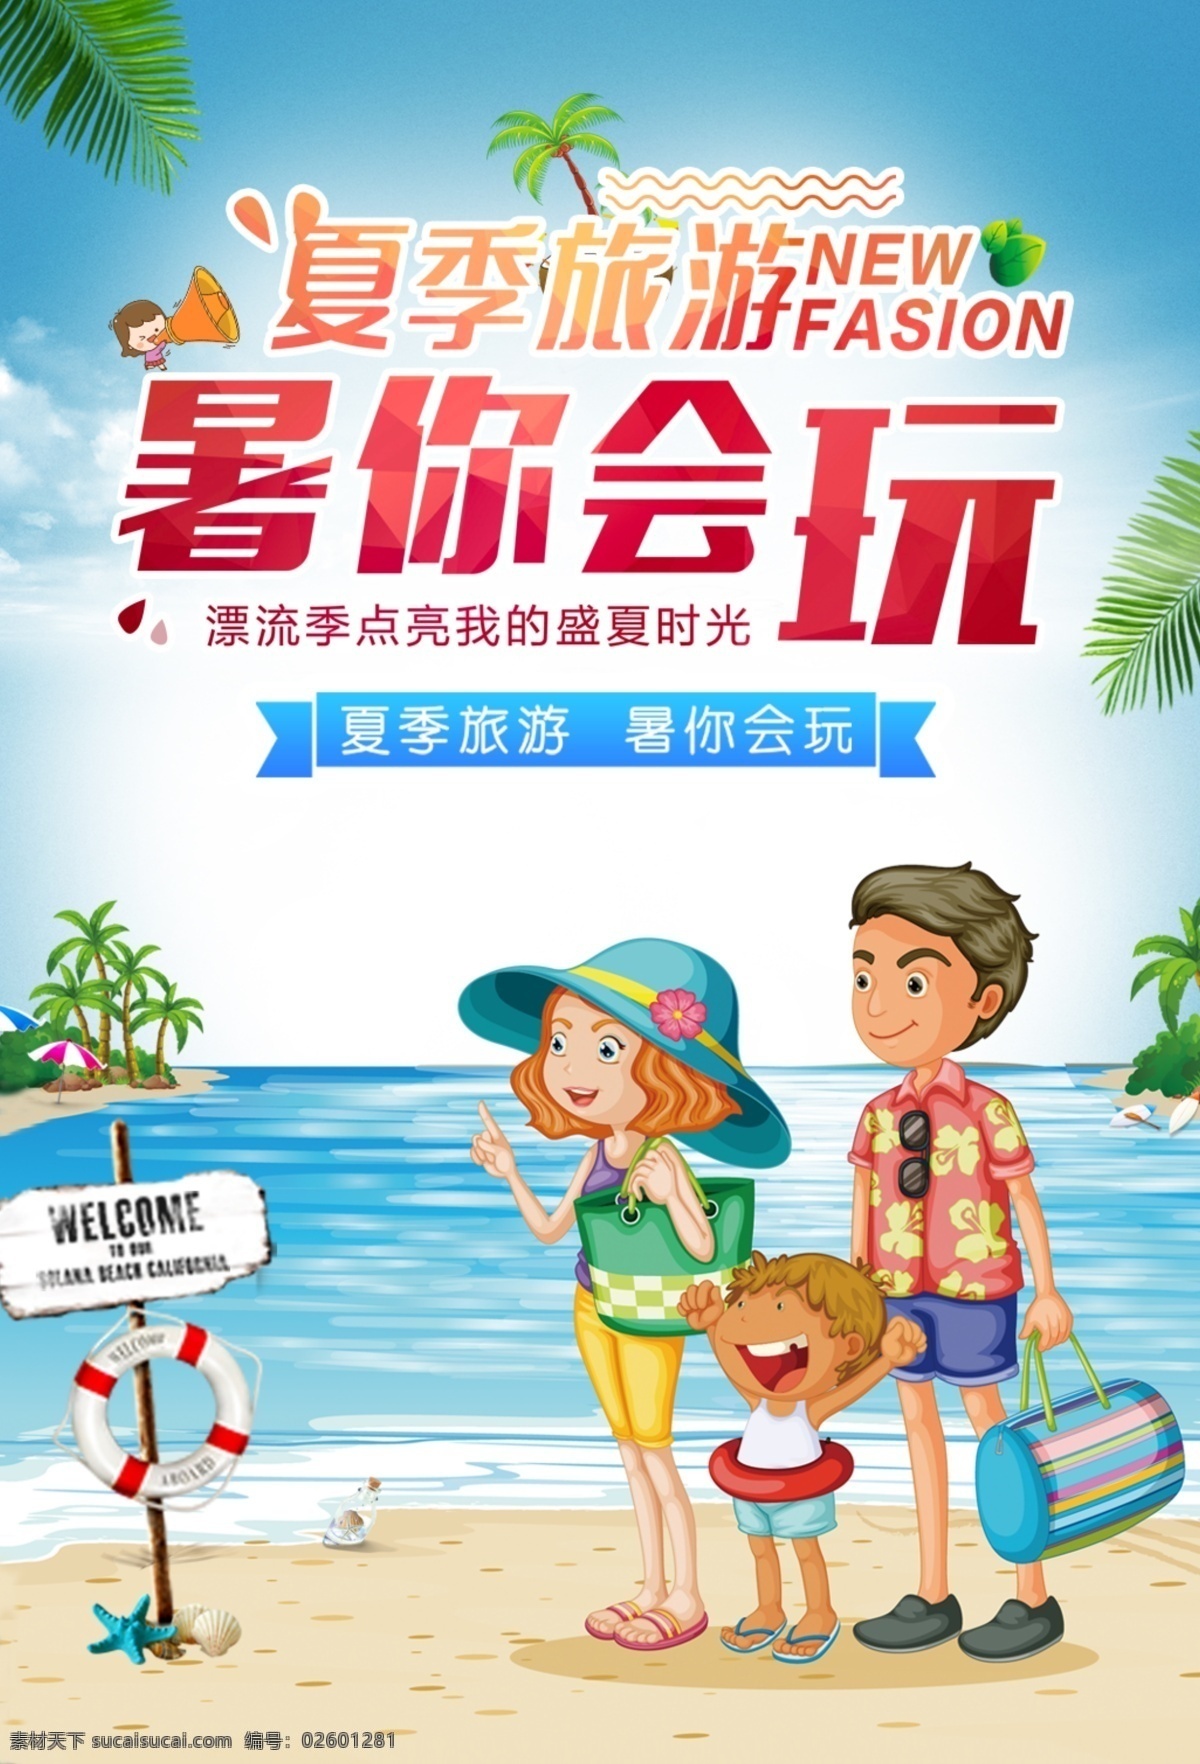 夏季 旅行 旅游活动 宣传海报 素材图片 夏季旅行 旅游 活动 宣传 海报